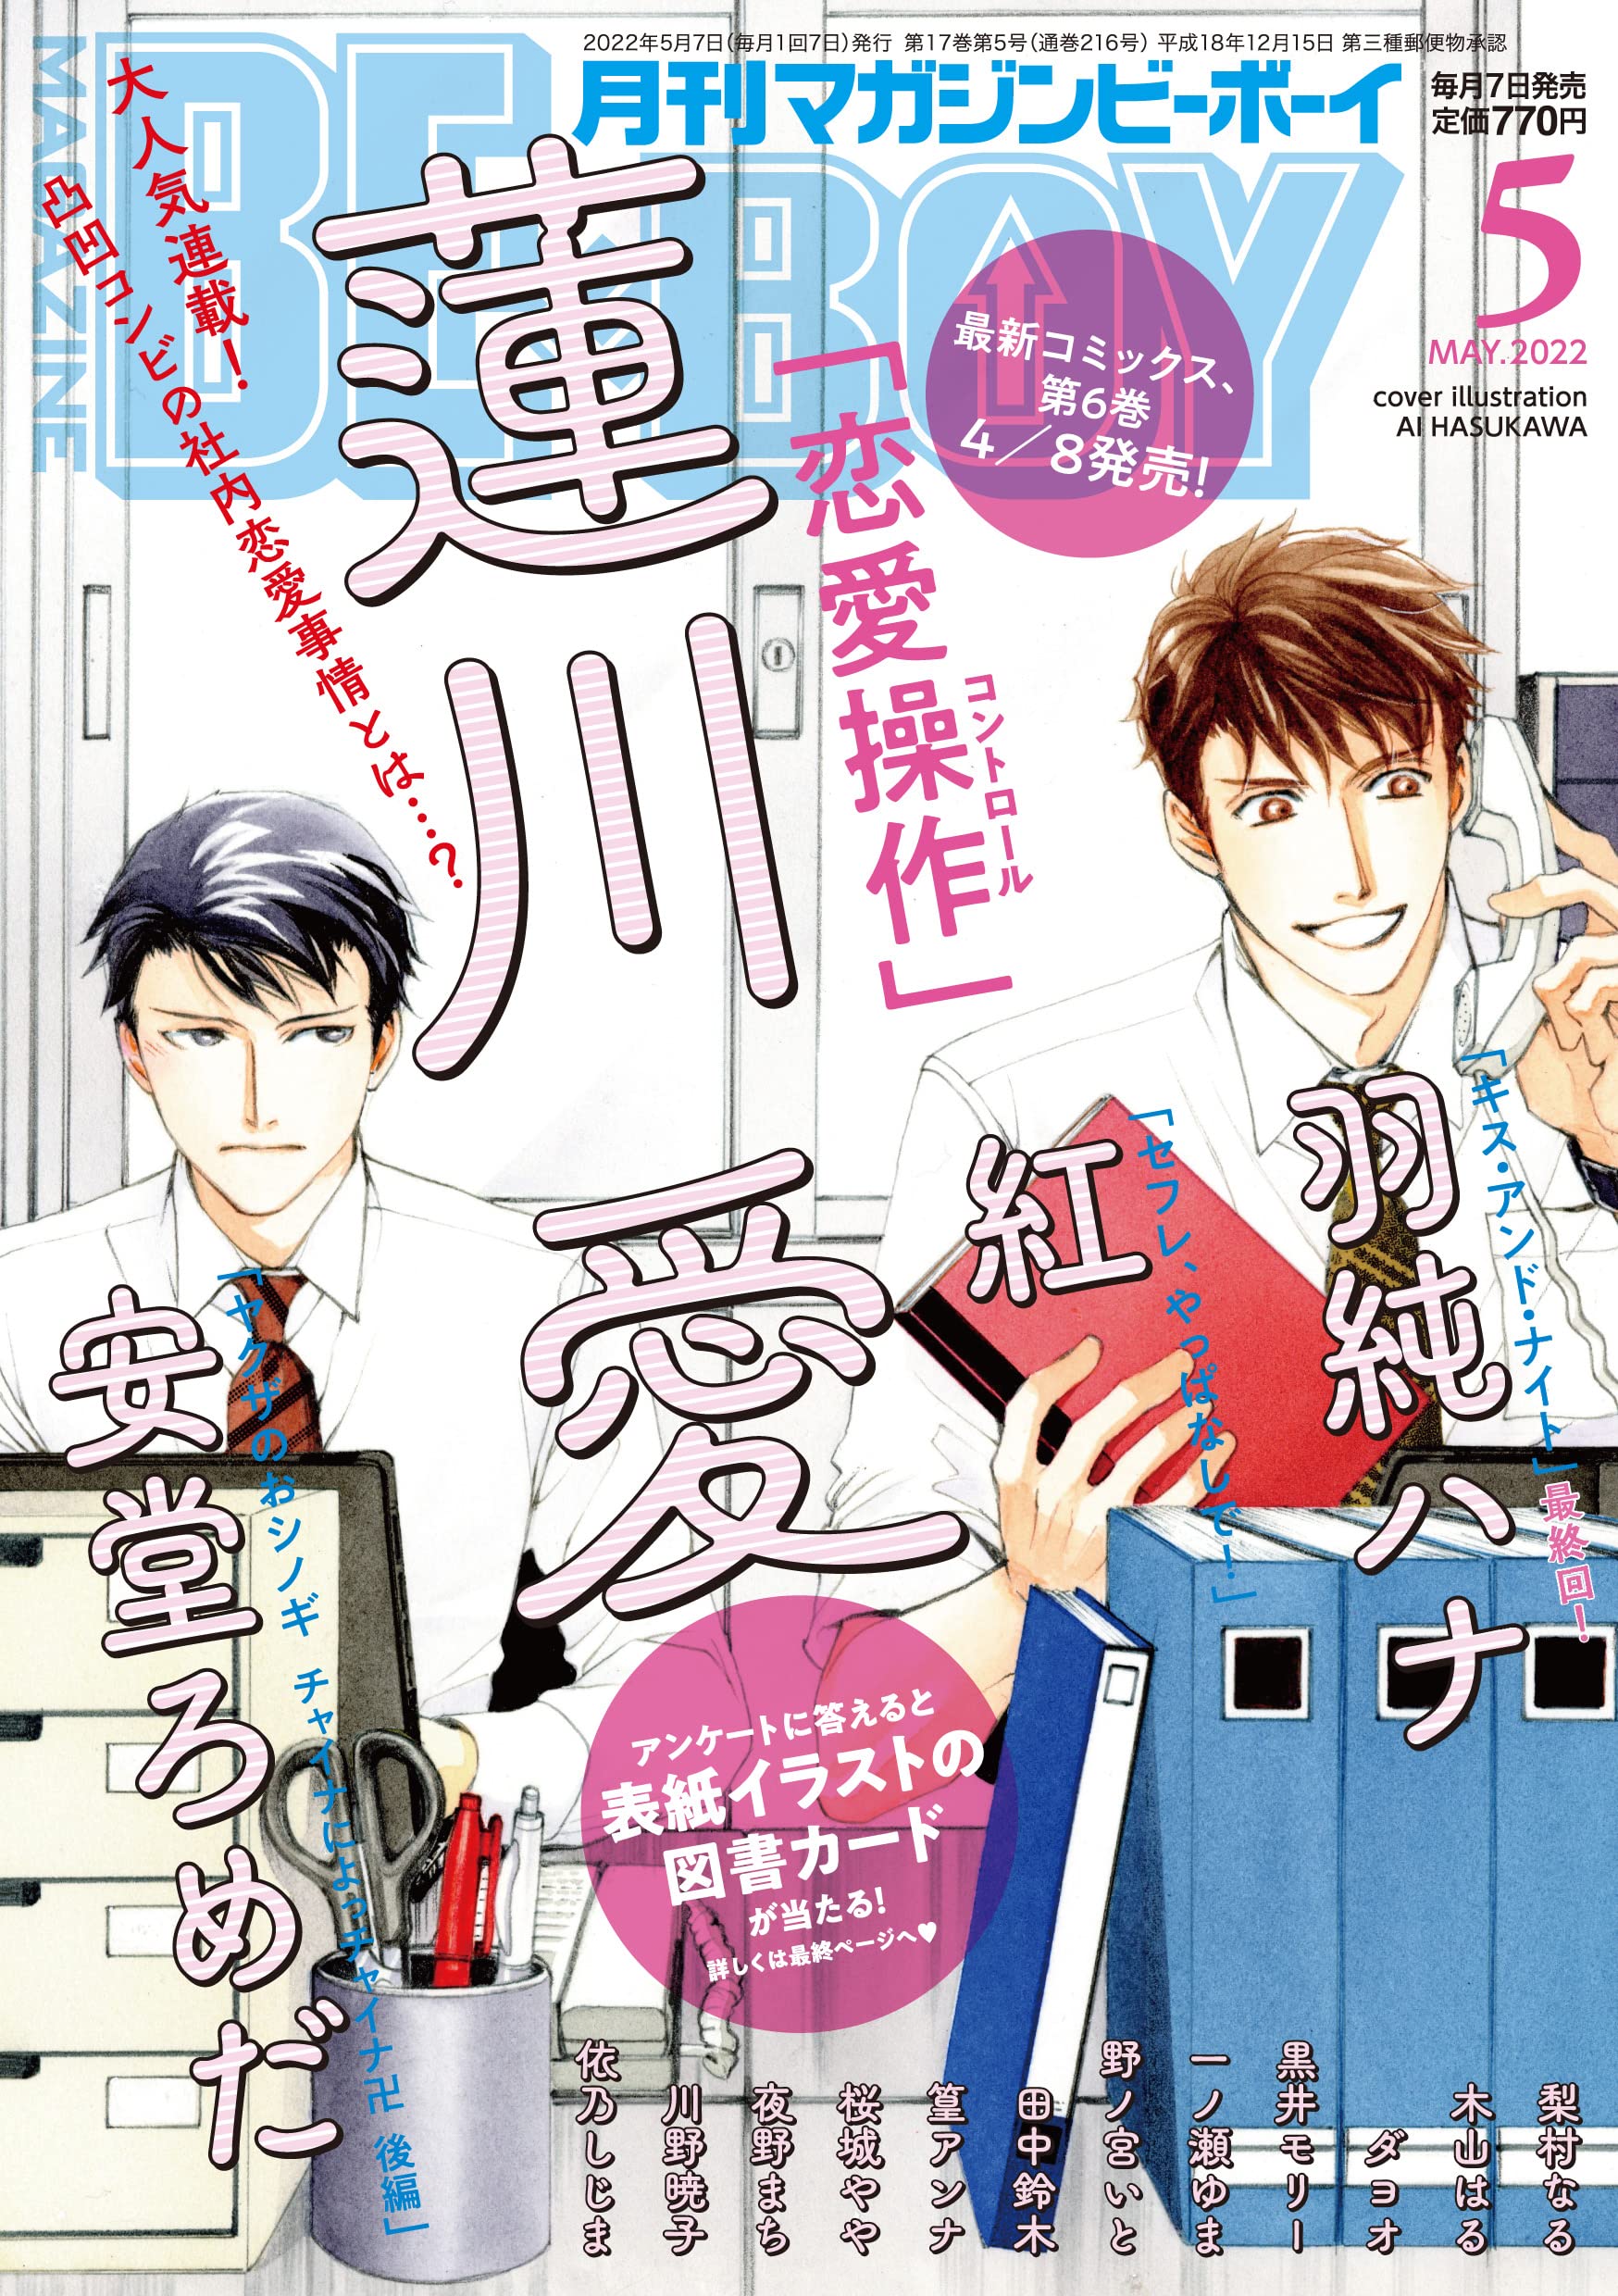 Boys Love (Yaoi) Comics - B-boy COMICS (MAGAZINE BE×BOY (マガジンビーボーイ) 2022年05月号[雑誌]) / Tanaka Suzuki & Sakuragi Yaya & 紅 & Andou Romeda & Hasukawa Ai